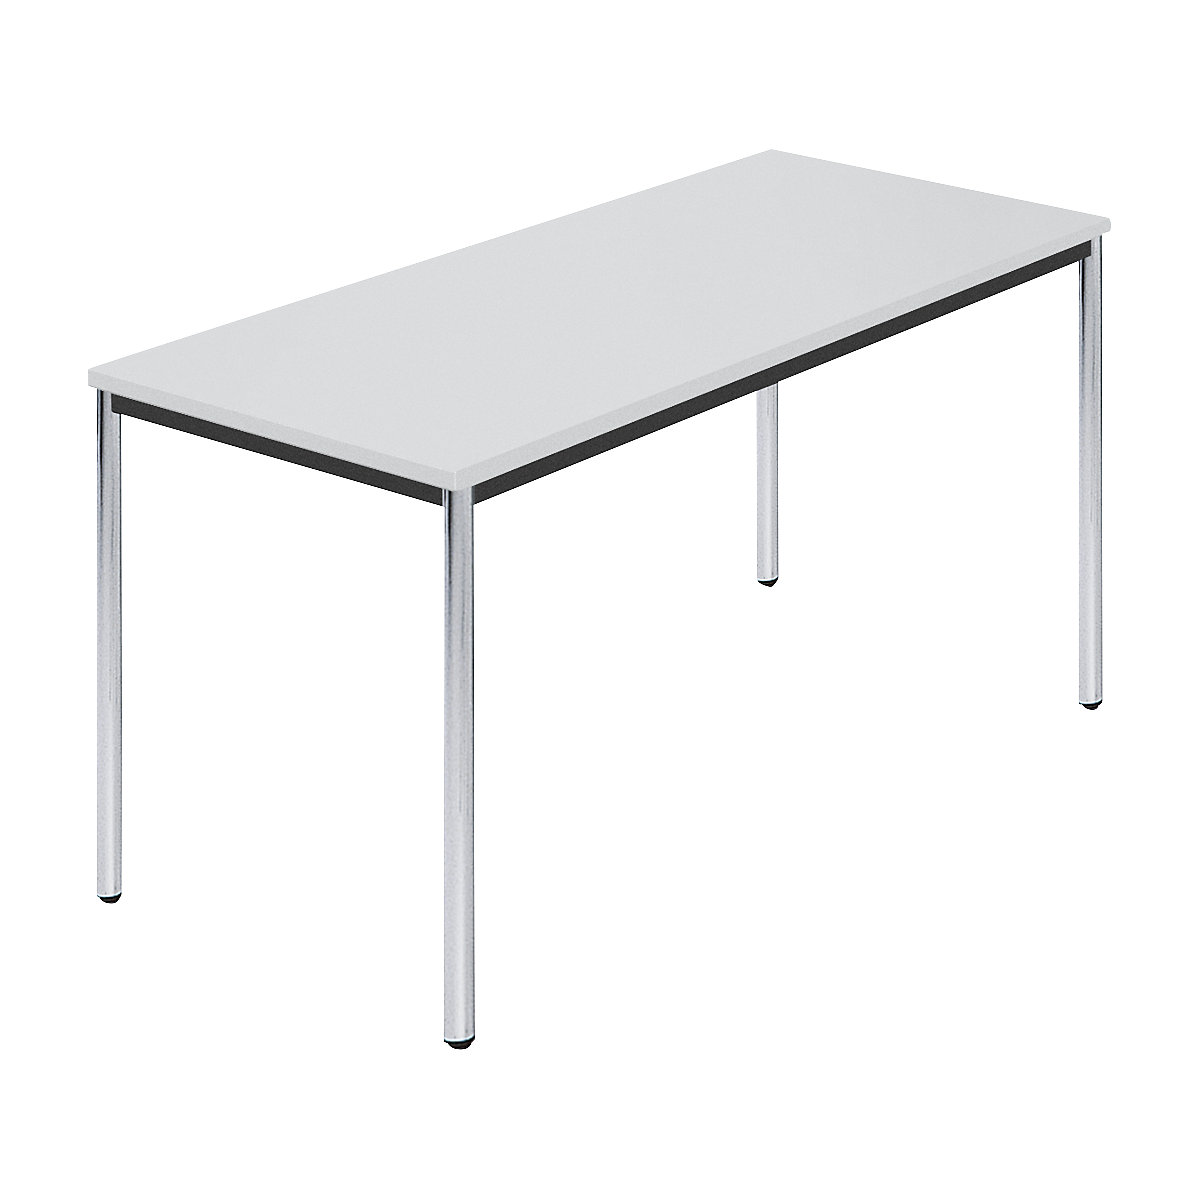 Table rectangulaire en tube rond chromé, l x p 1400 x 700 mm, gris-6